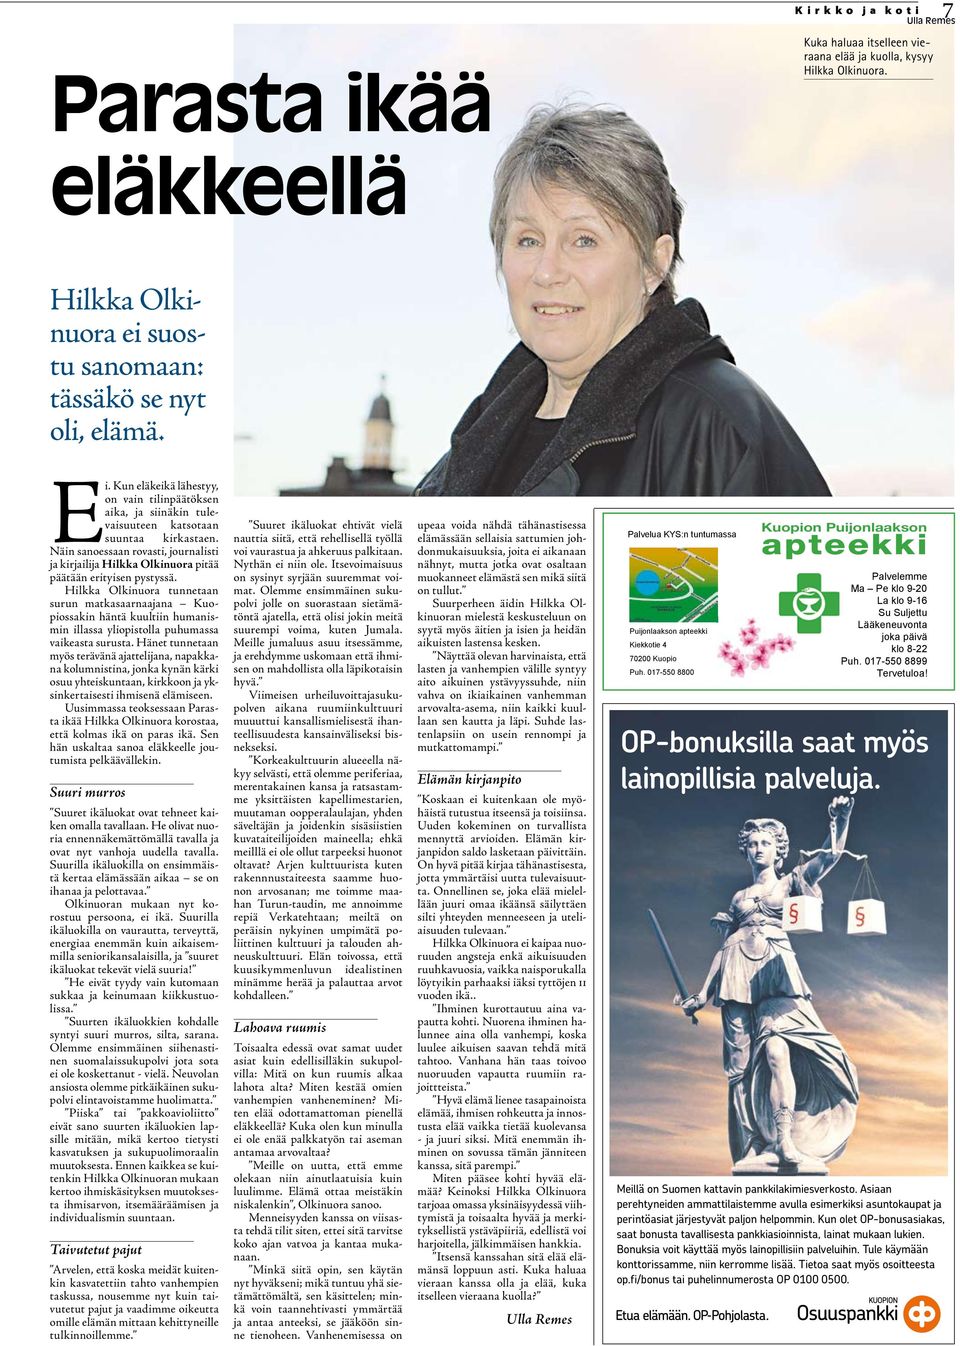 Näin sanoessaan rovasti, journalisti ja kirjailija Hilkka Olkinuora pitää päätään erityisen pystyssä.